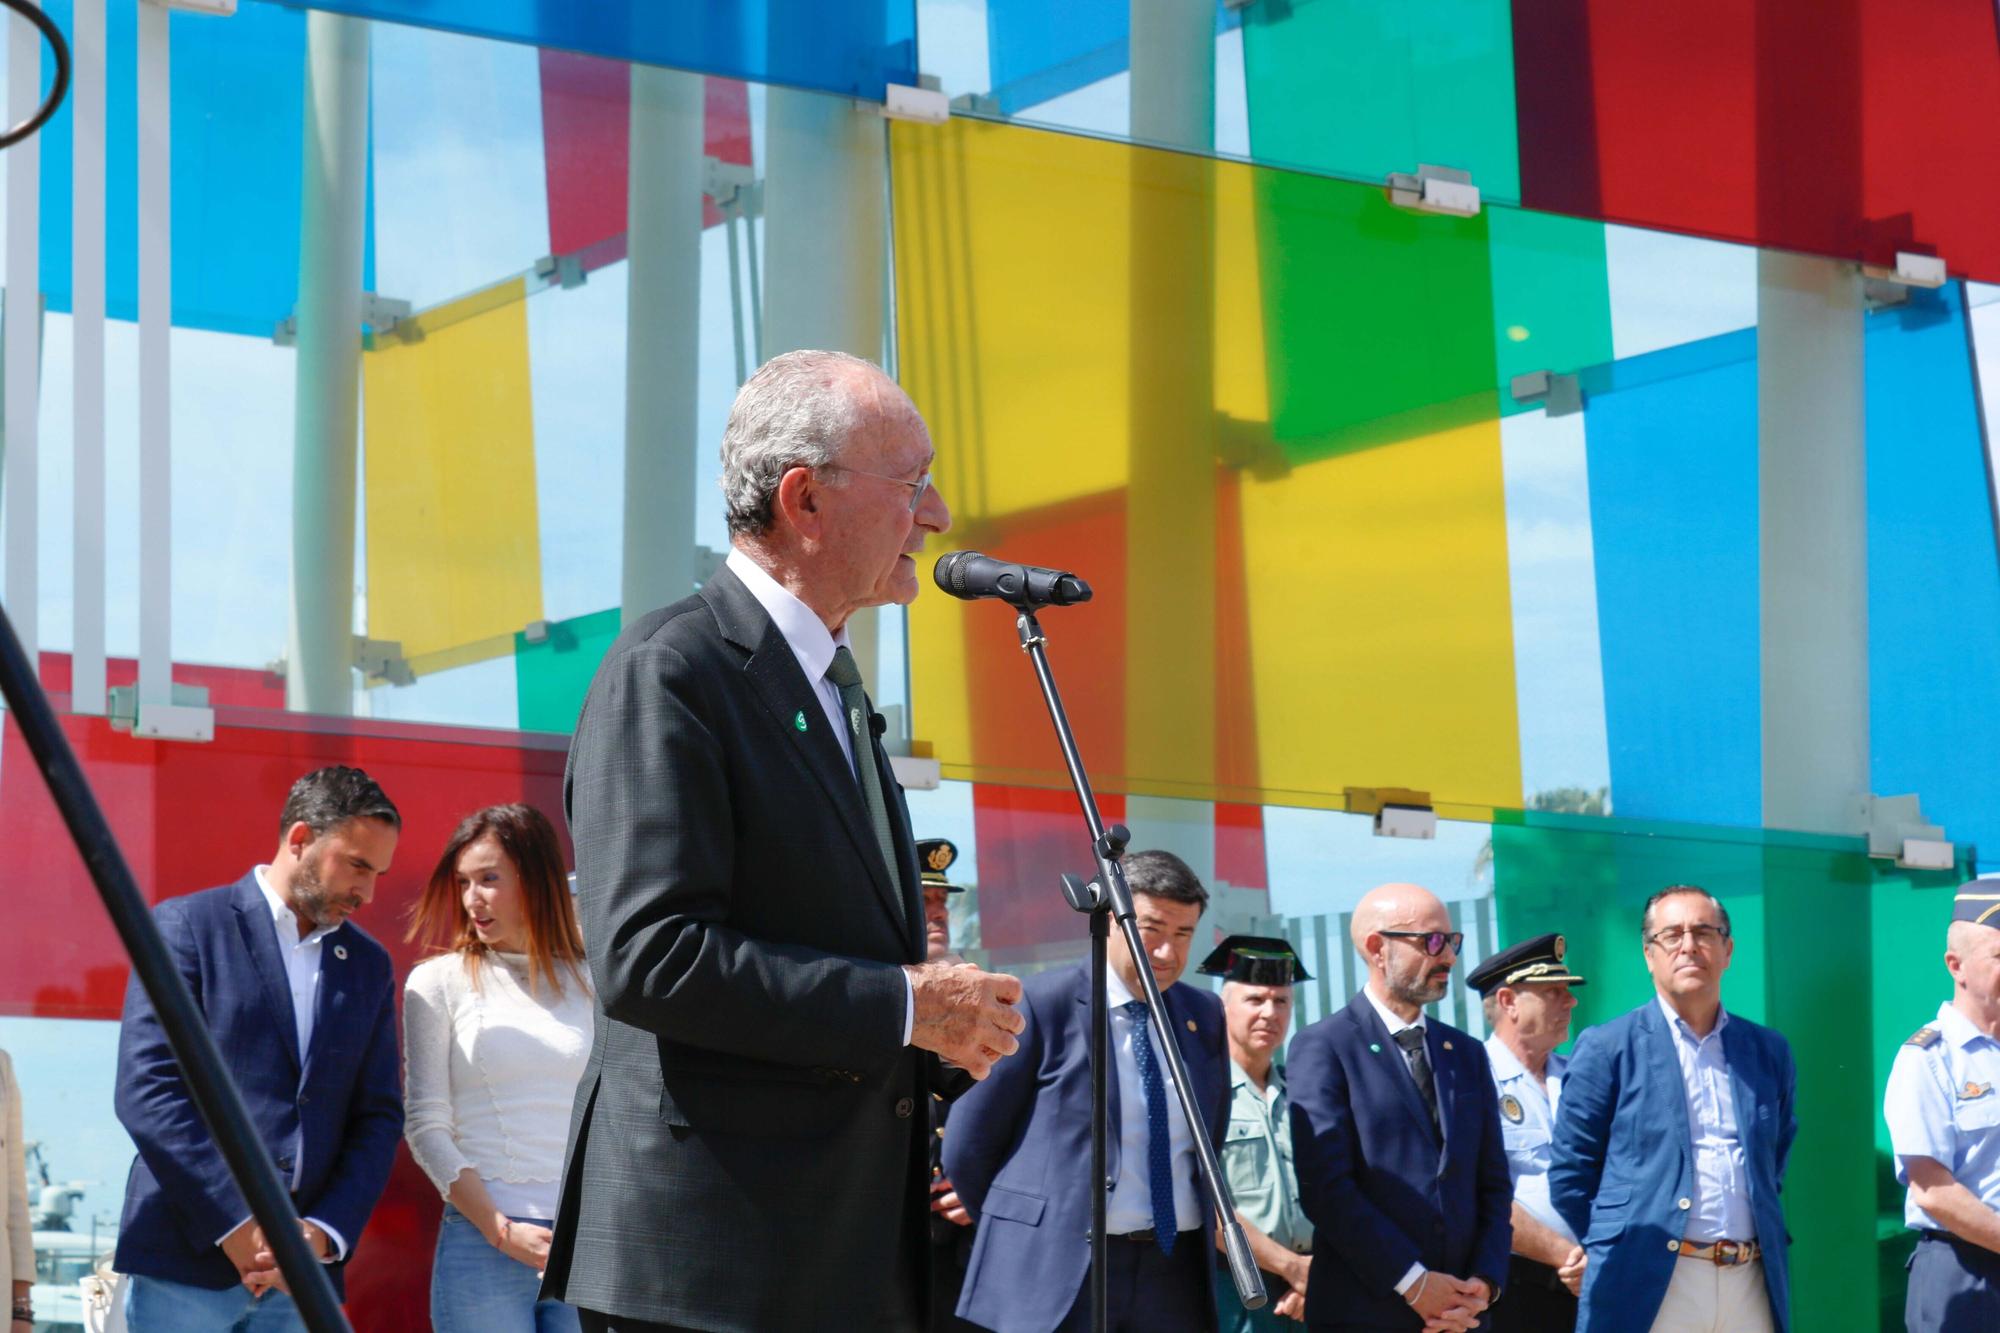 El alcalde de Málaga, Francisco de la Torre, junto al resto de la Corporación Municipal, y al delegado de Desarrollo Educativo y Formación Profesional, Miguel Briones, asiste al acto con motivo del Día de Europa.